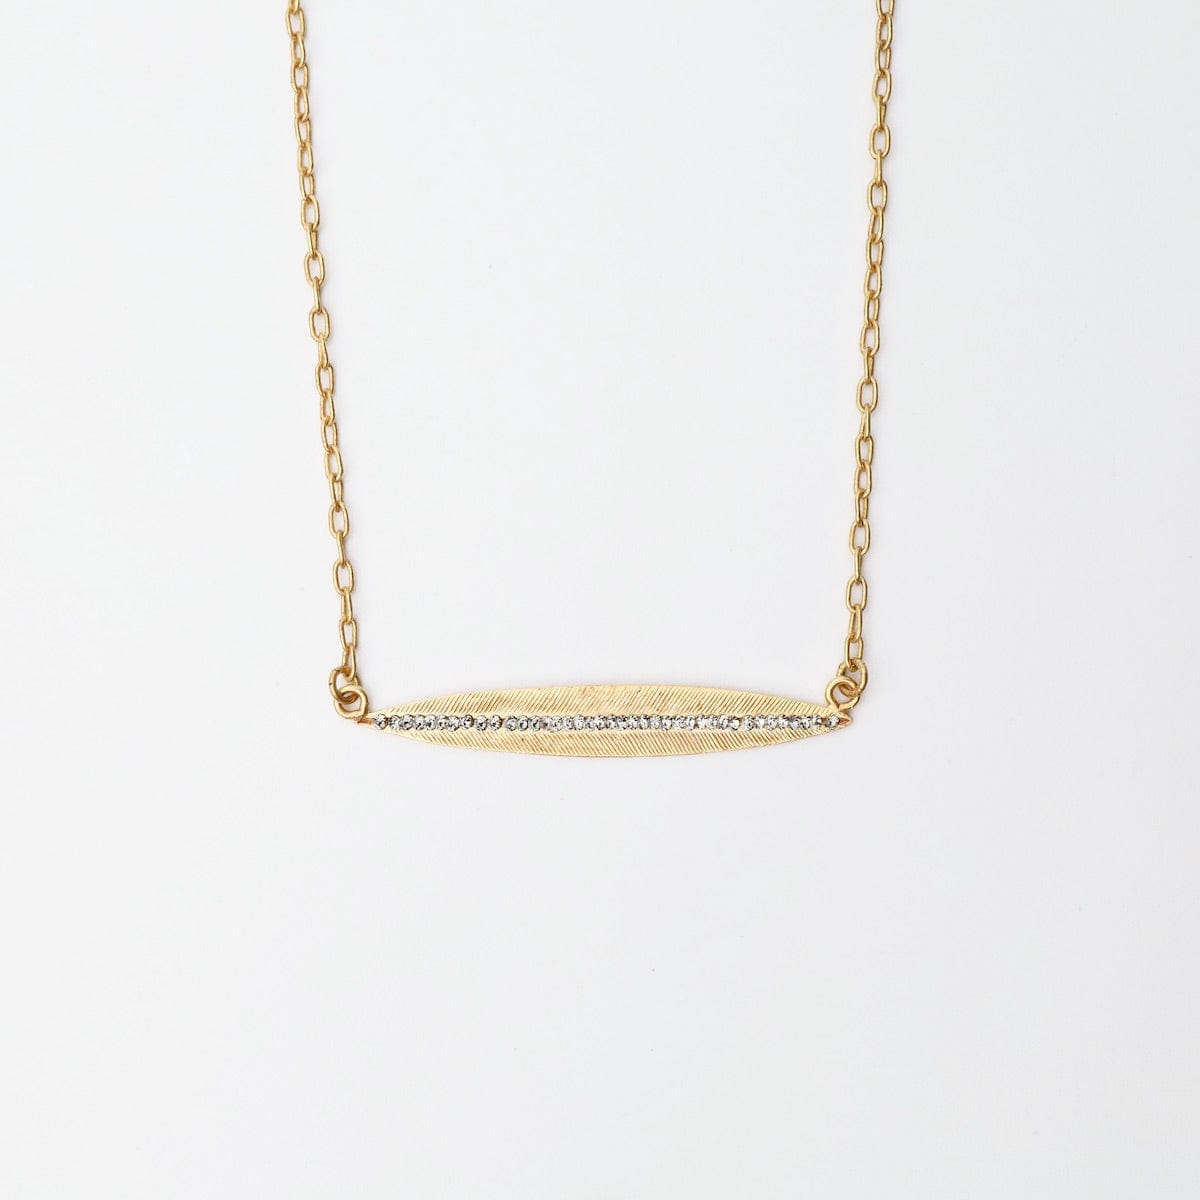 NKL-JM Autumn Leaf Necklace - Gold Plate